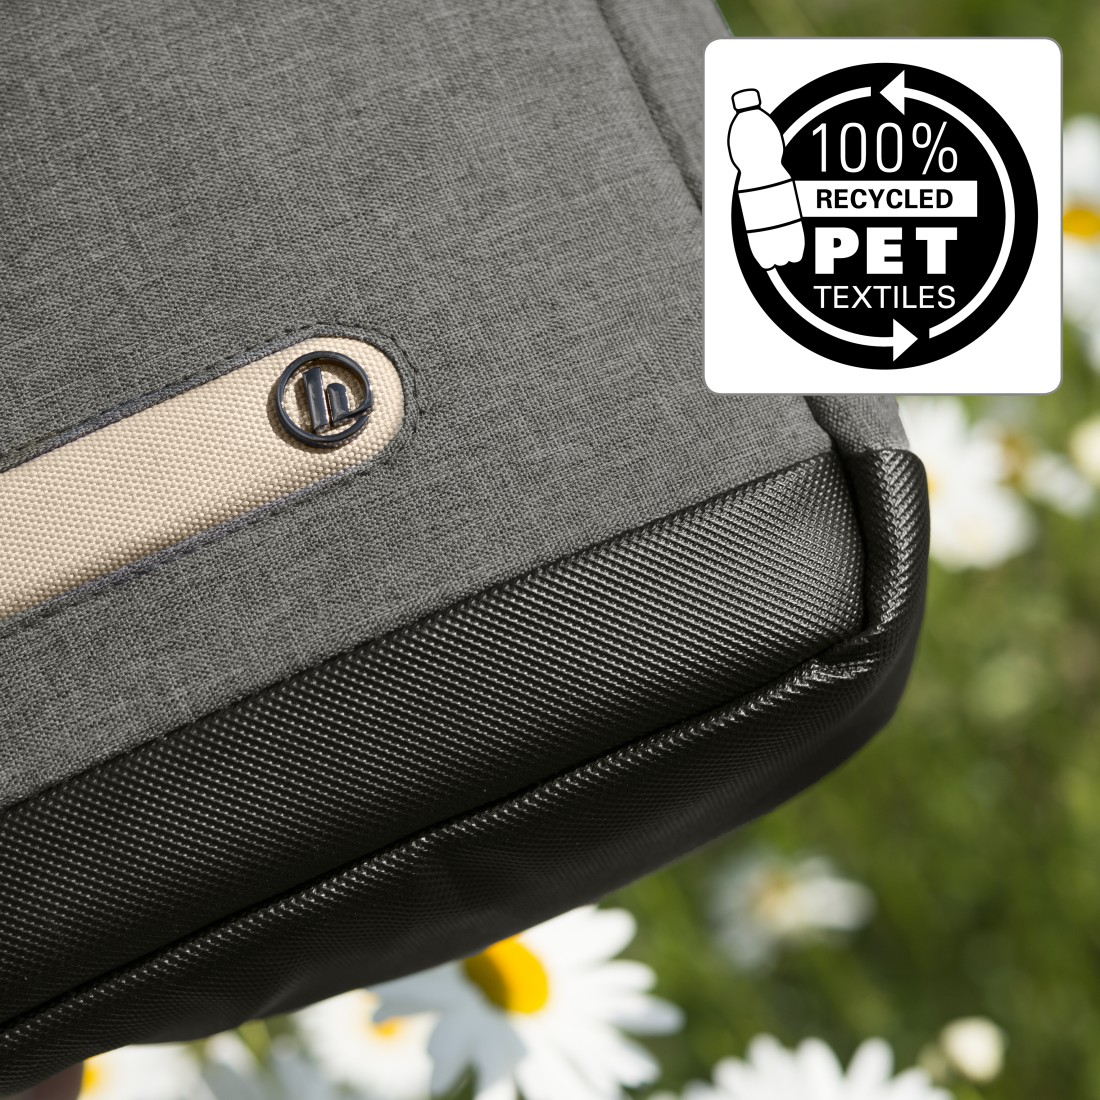 Umhängetasche Polyester, Recyceltem Terra Notebooktasche für HAMA Grau Universal 100% Zoll 15.6 aus